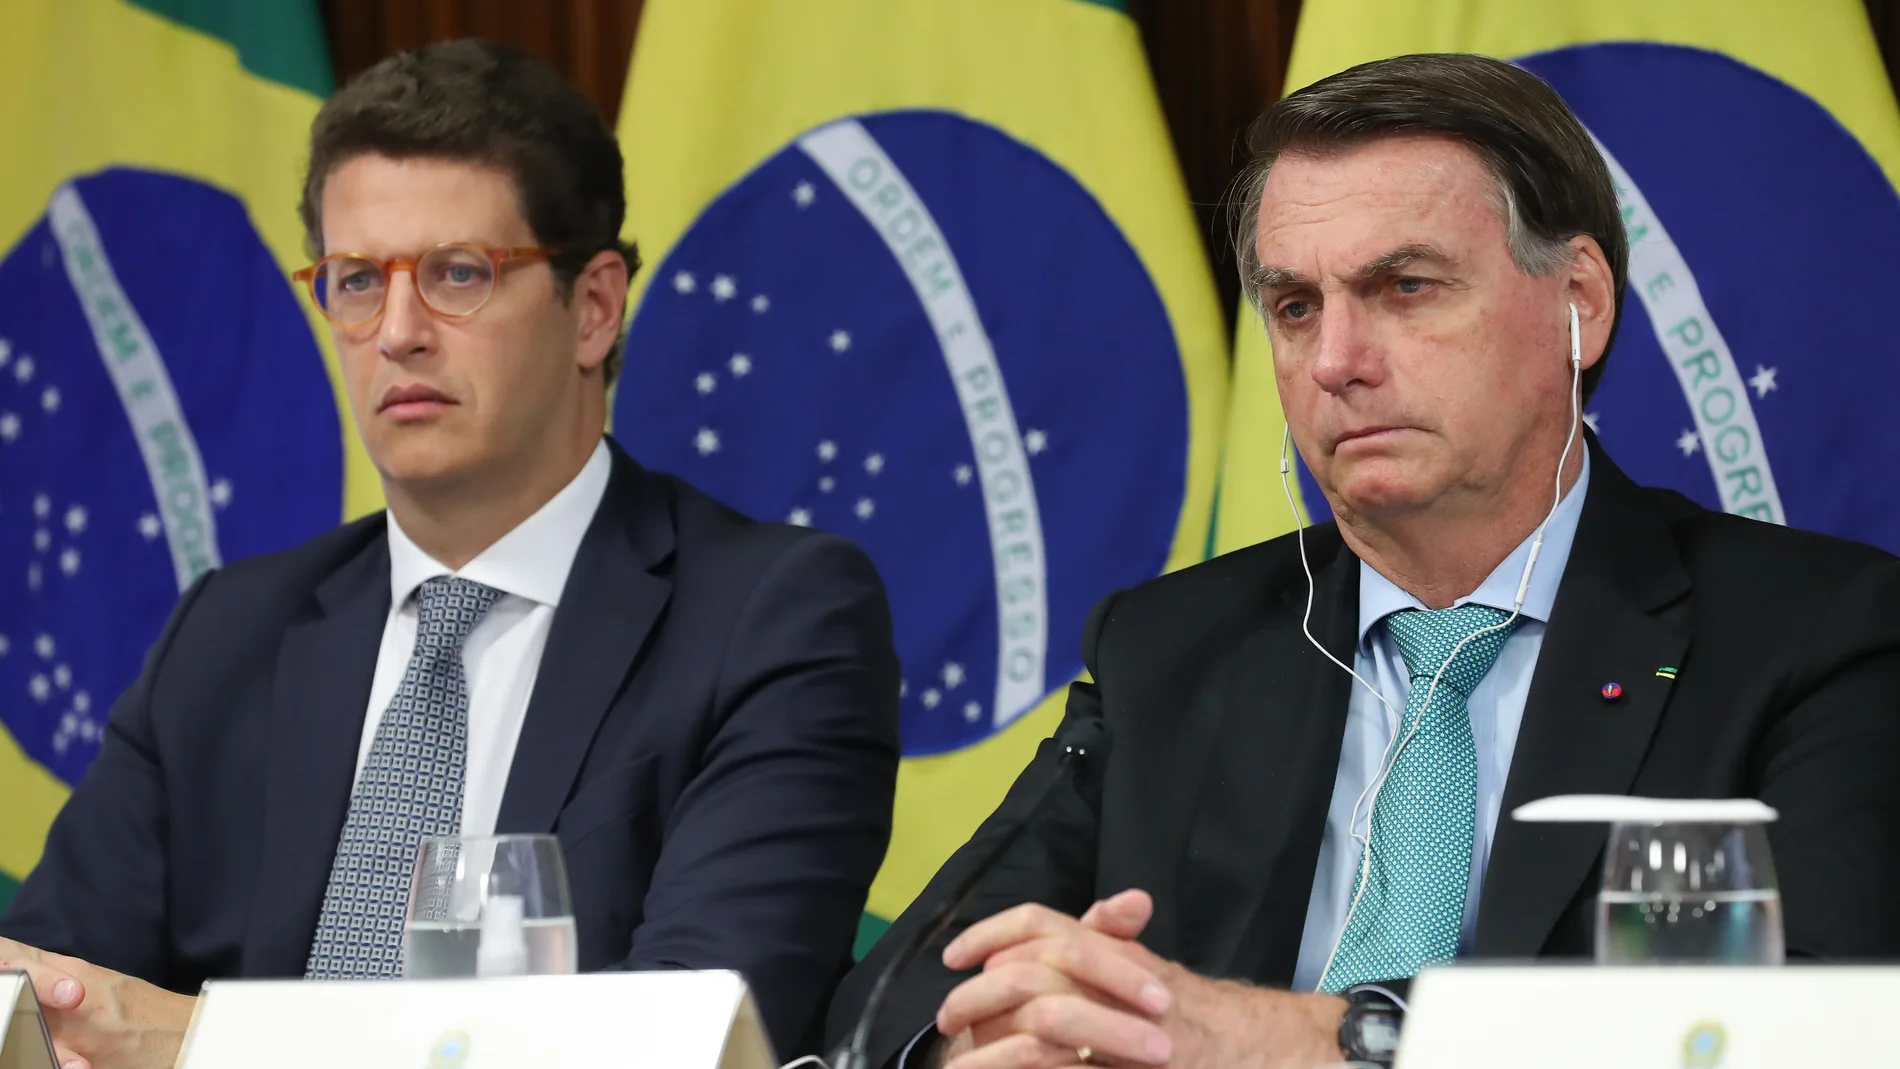 El presidente de Brasil, Jair Bolsonaro, defendió en todo momento a su ministro de Medio Ambiente, Ricardo Salles